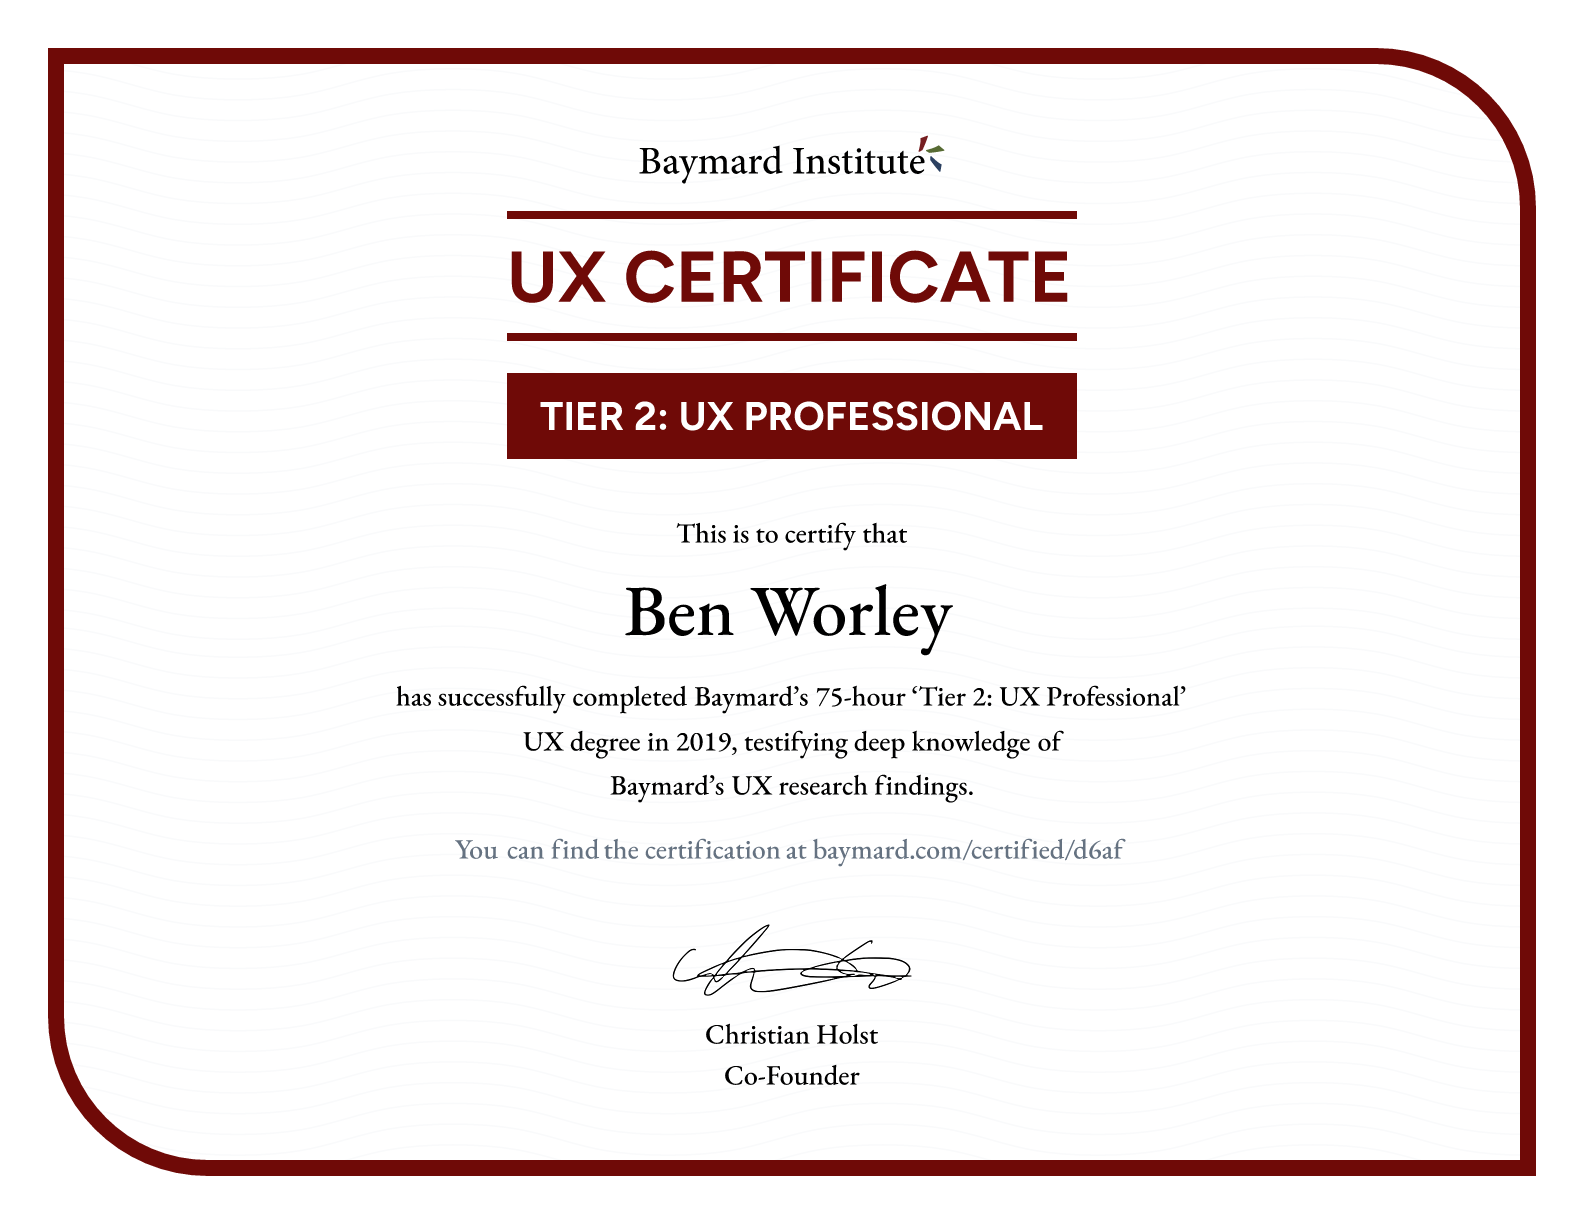 Ben Worley’s certificate